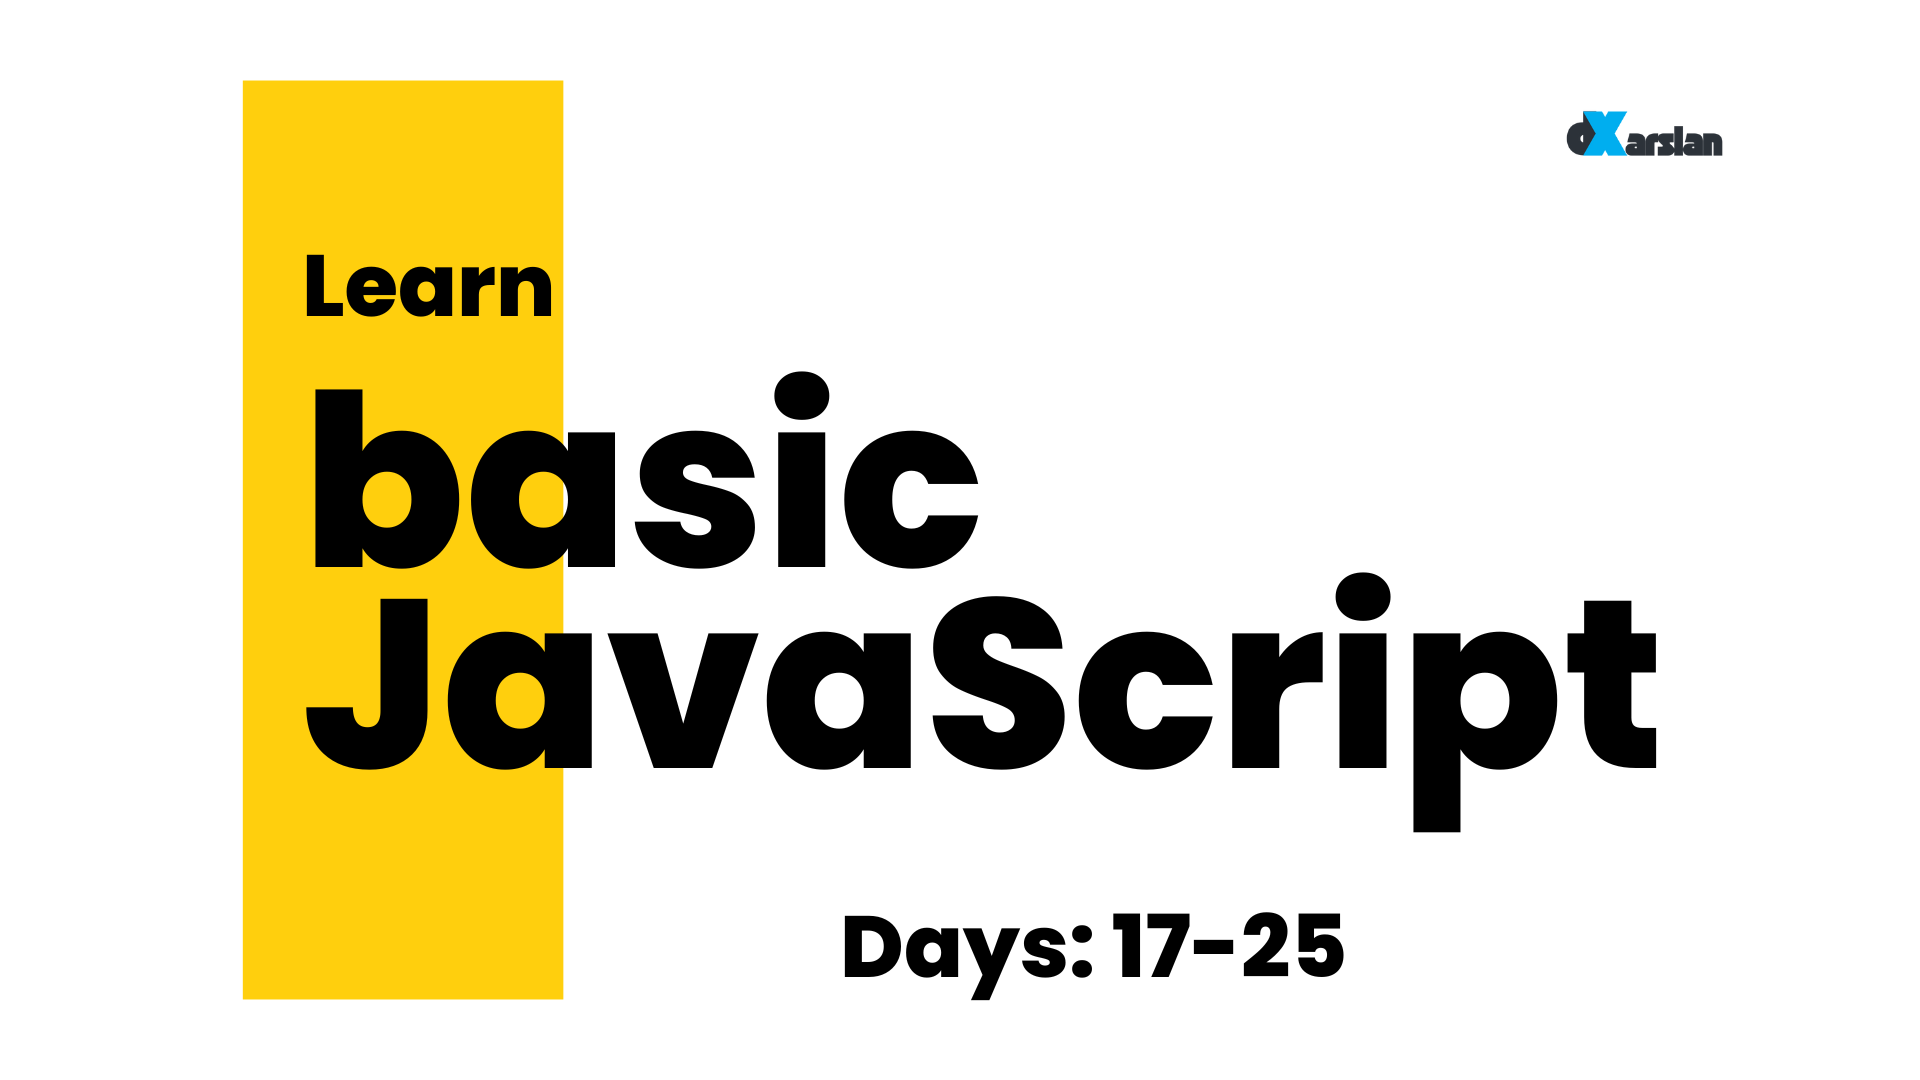 Learn JavaScript Basics